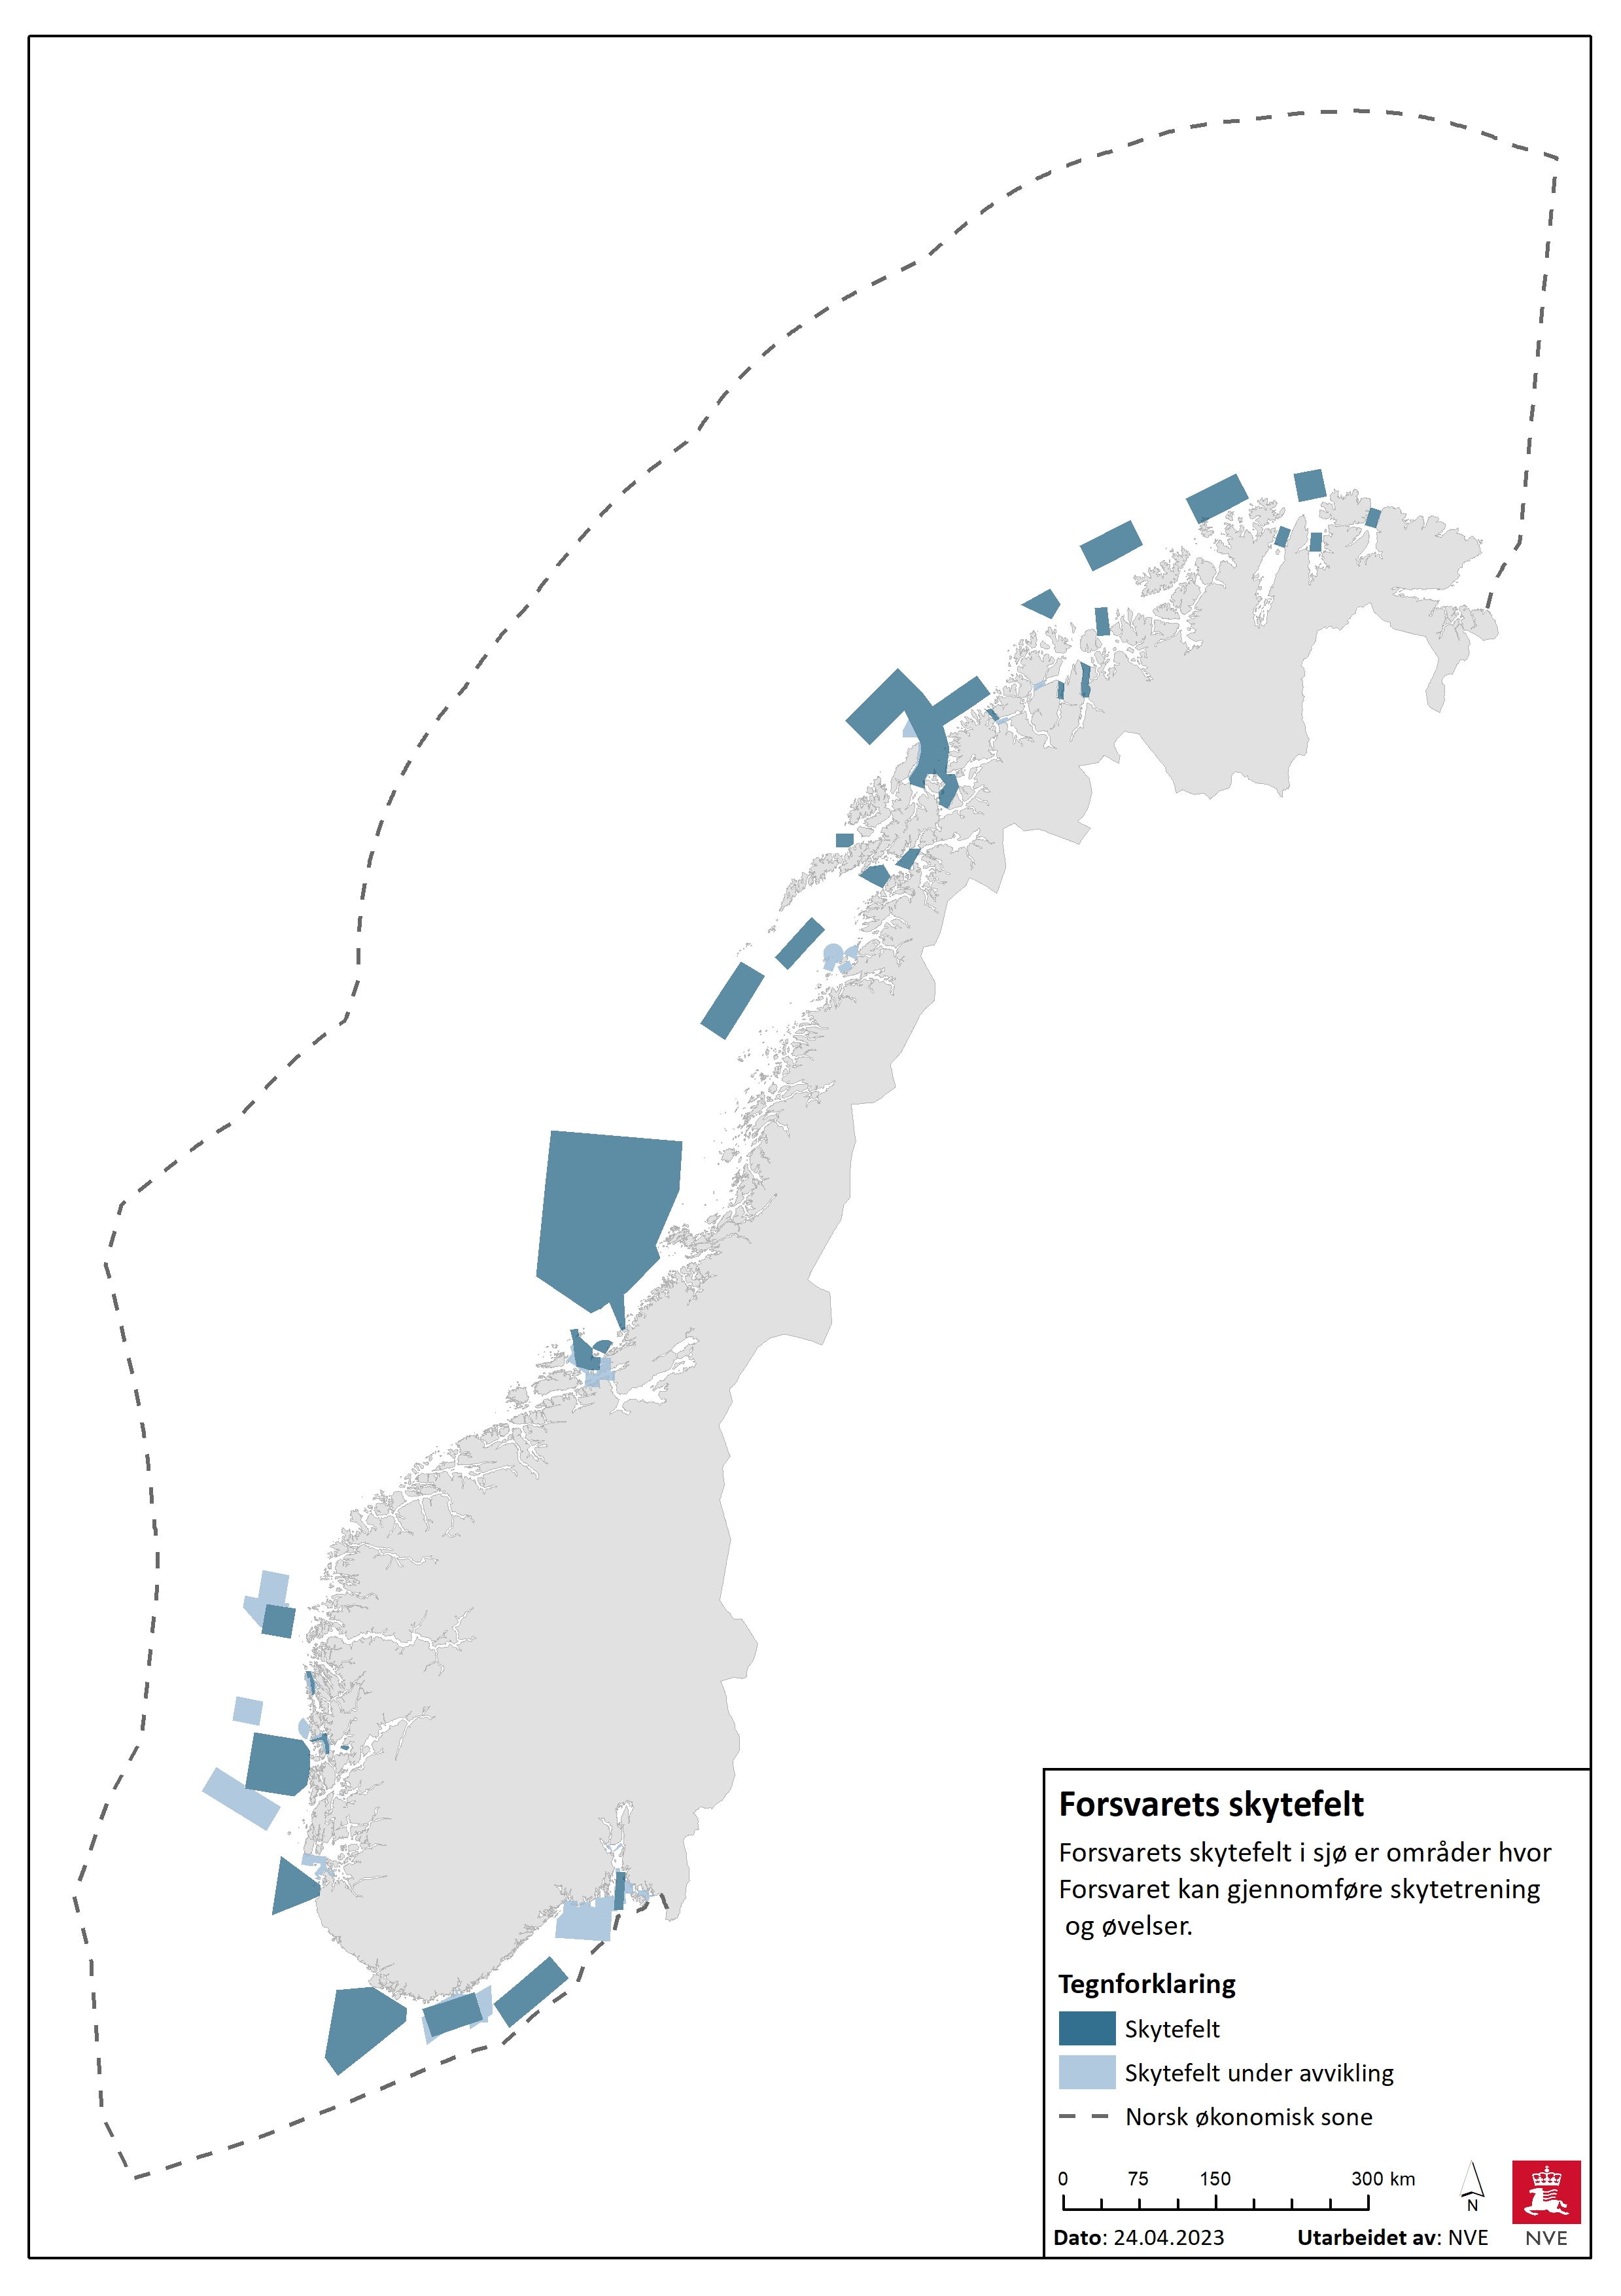 Oversikt over eksisterende skytefelt og skytefelt under avvikling i norske havområder.